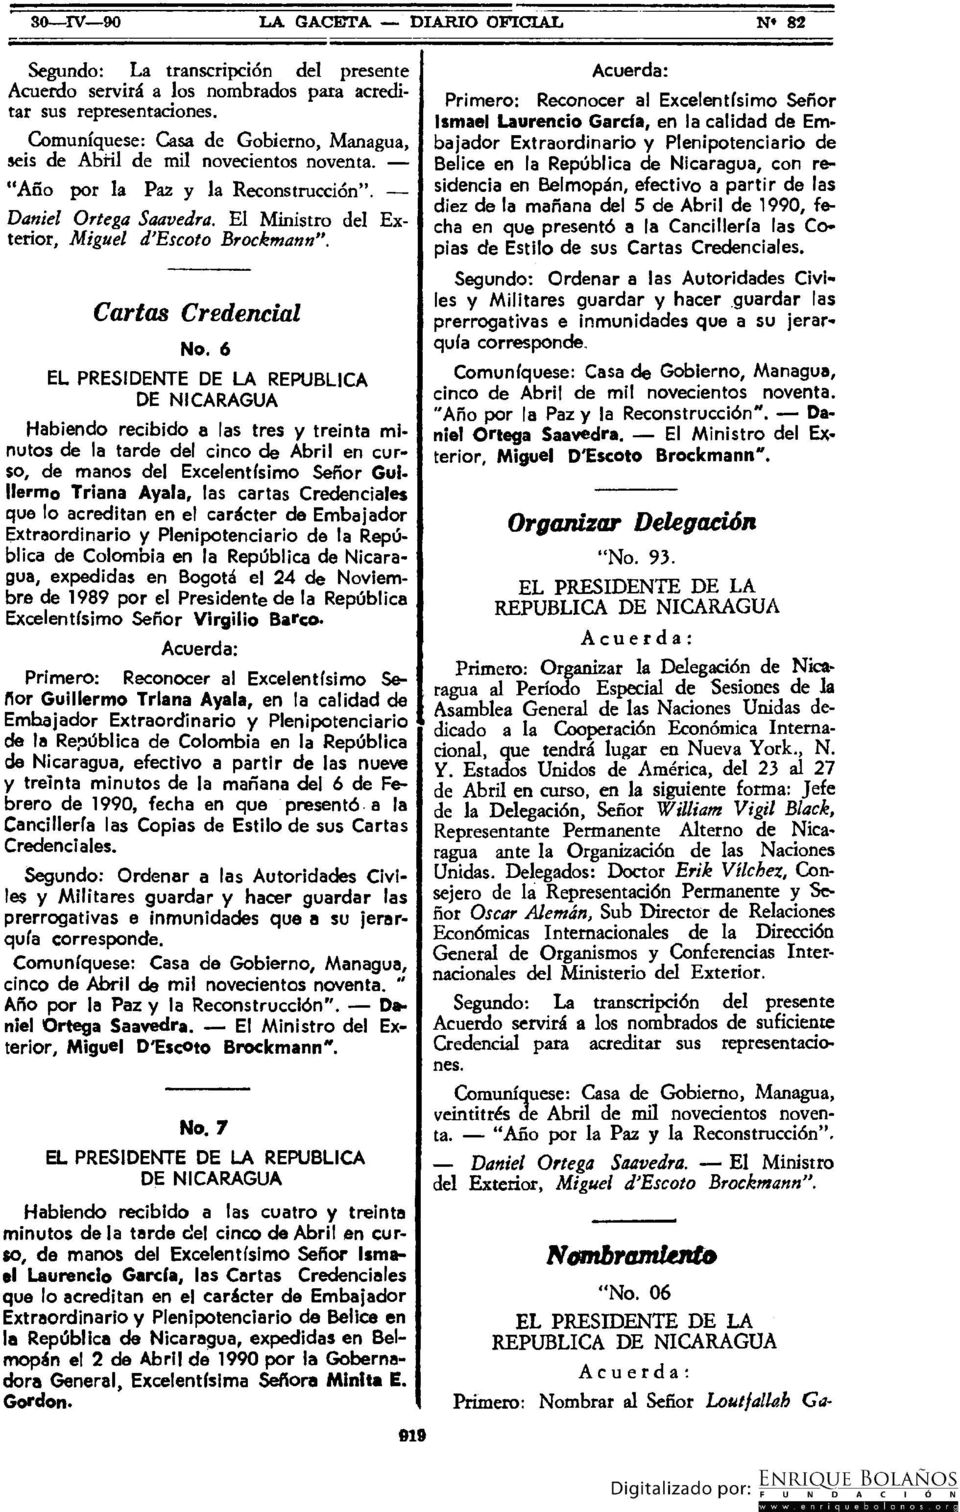 6 REPUBLICA DE NICARAGUA Habiendo recibido a las tres y treinta minutos de la tarde del cinco de Abril en curso, de manos del Excelentísimo Señor Guillermo Triana Ayala, las cartas Credenciales que